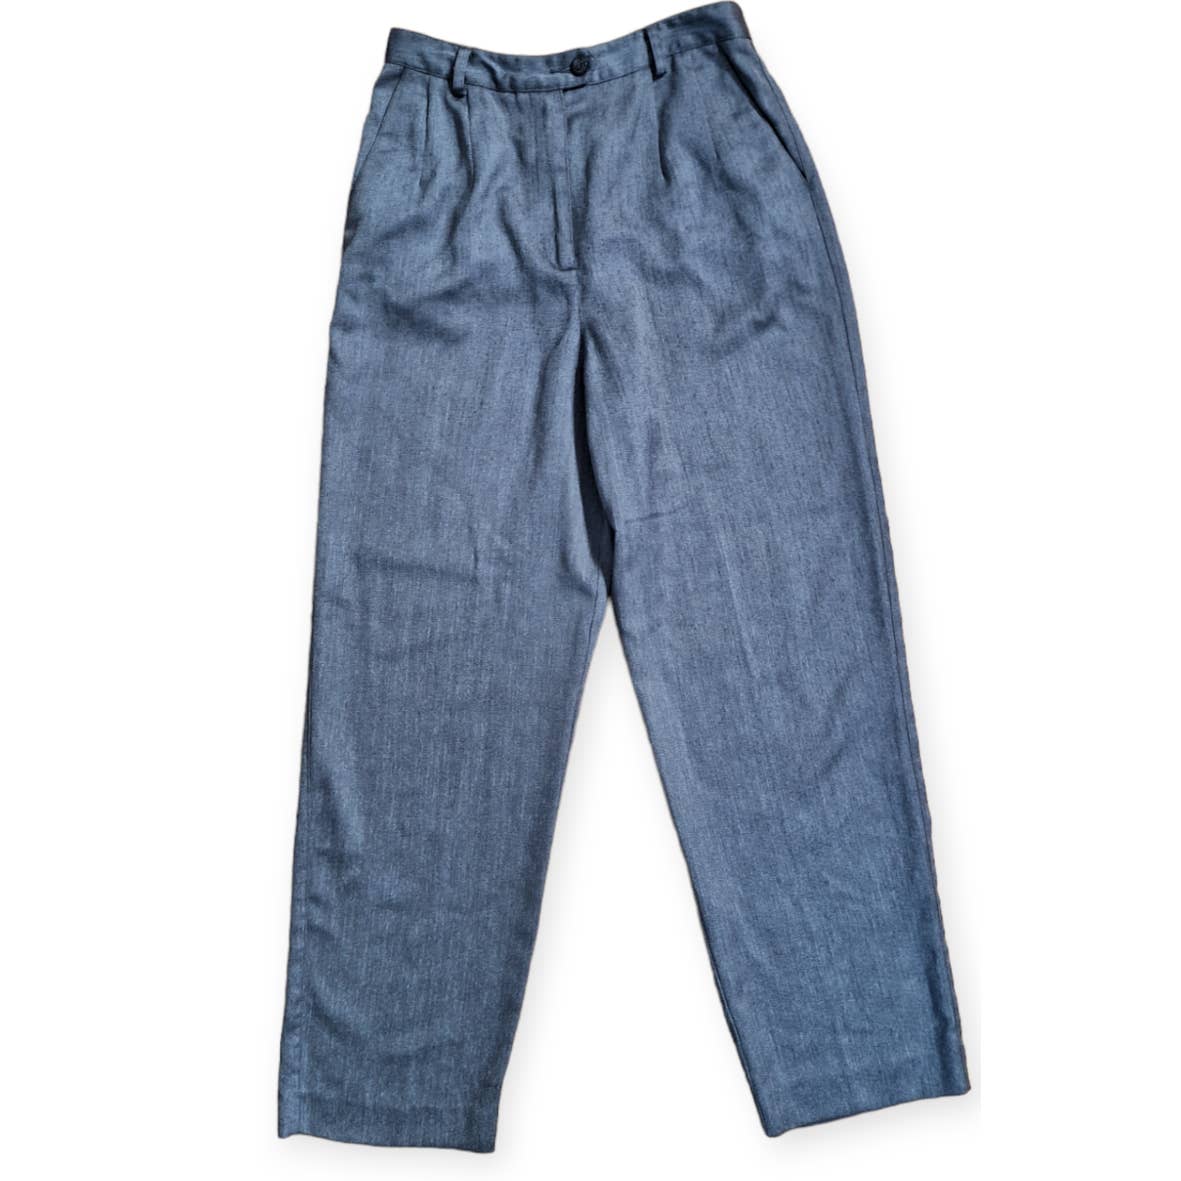 80s/90s Gray High Waist Pants Size 6 Peitie Waist 27" - themallvintage The Mall Vintage